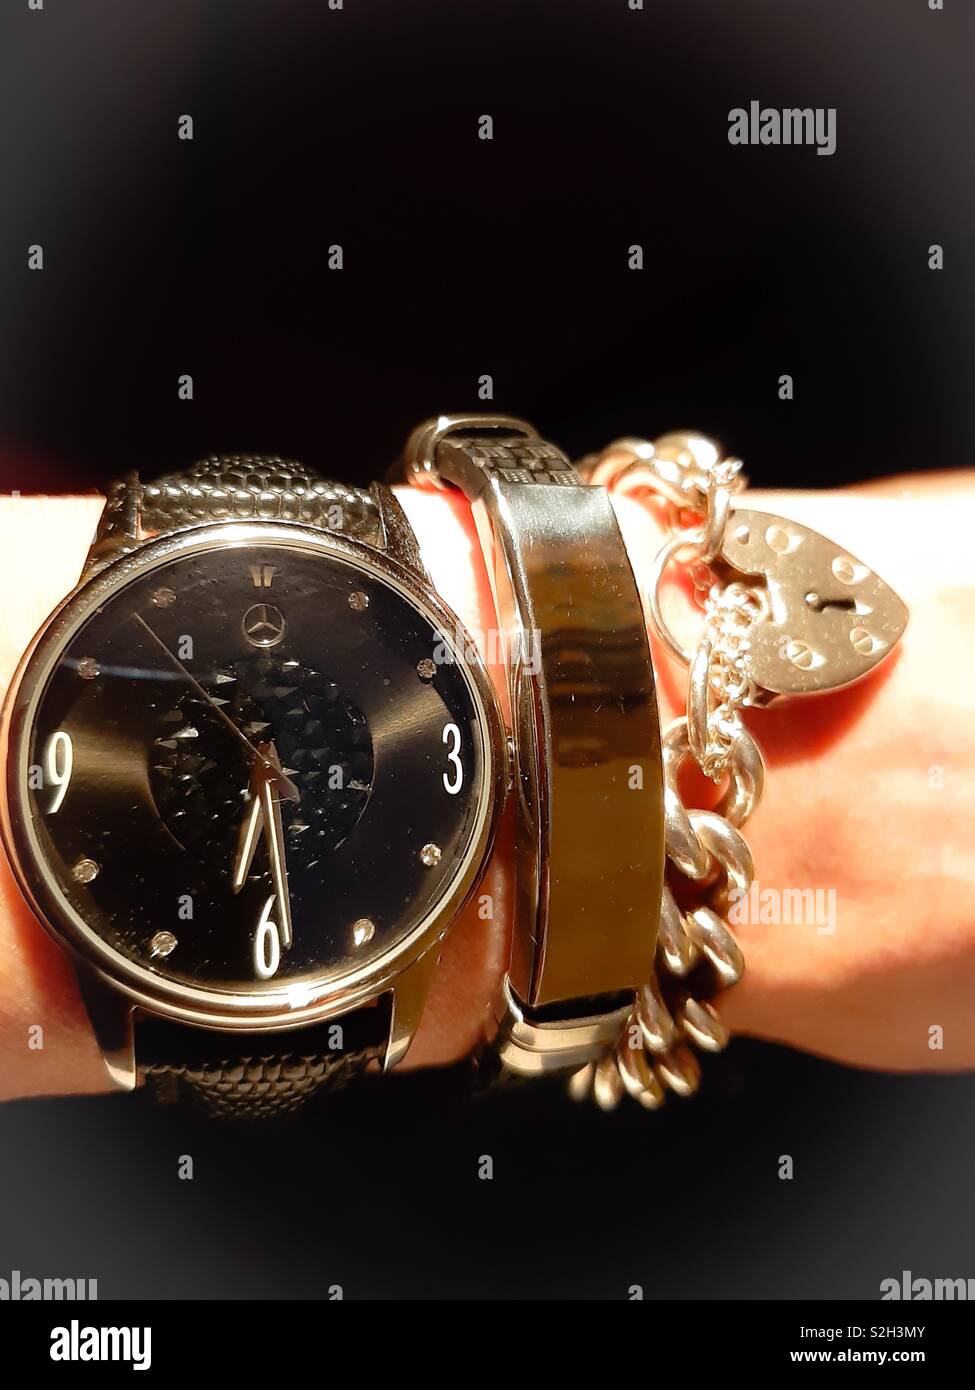 Schöne Trio. Mercedes Uhr mit einem Dubai Armband und eine echt Silber  Armband Stockfotografie - Alamy